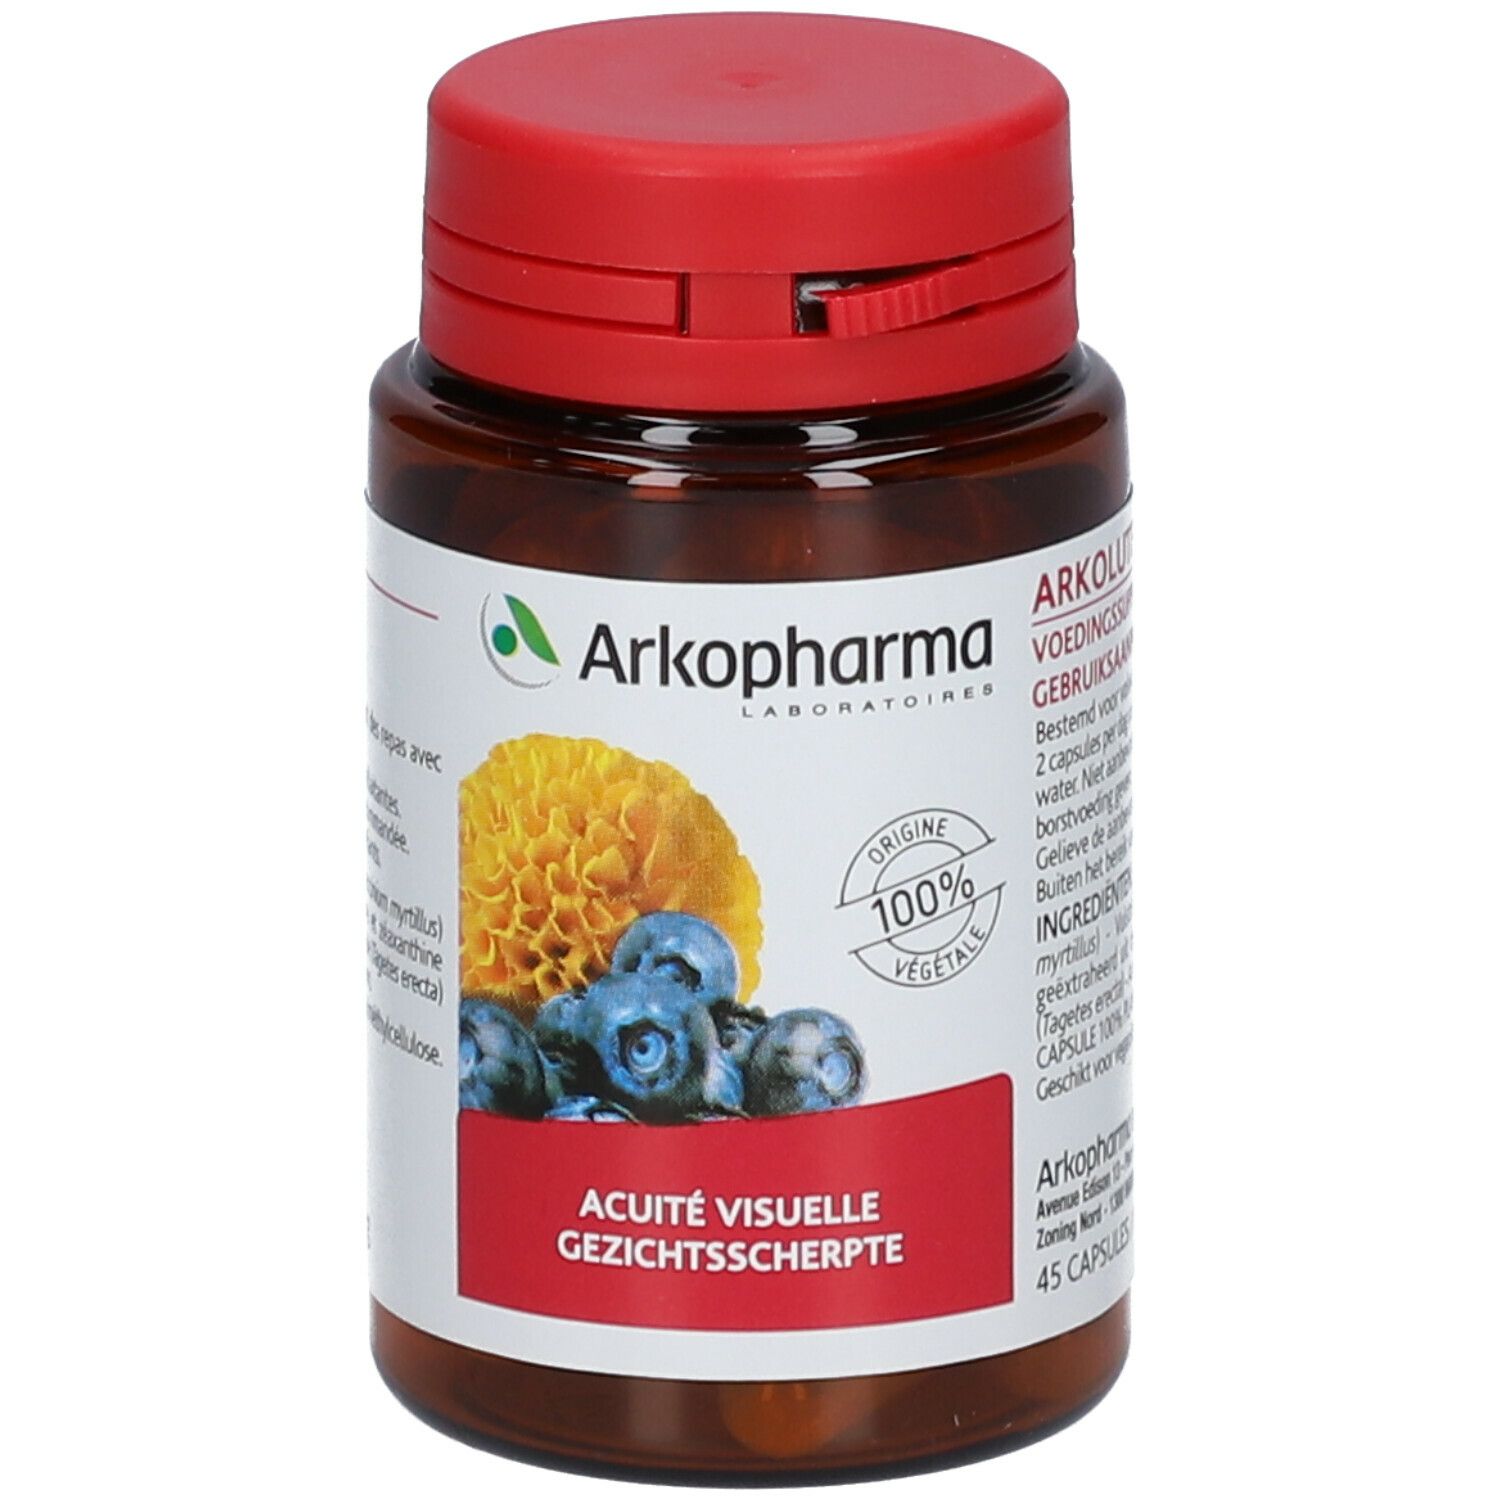 Arkopharma Arkogélules® Arkolutéine